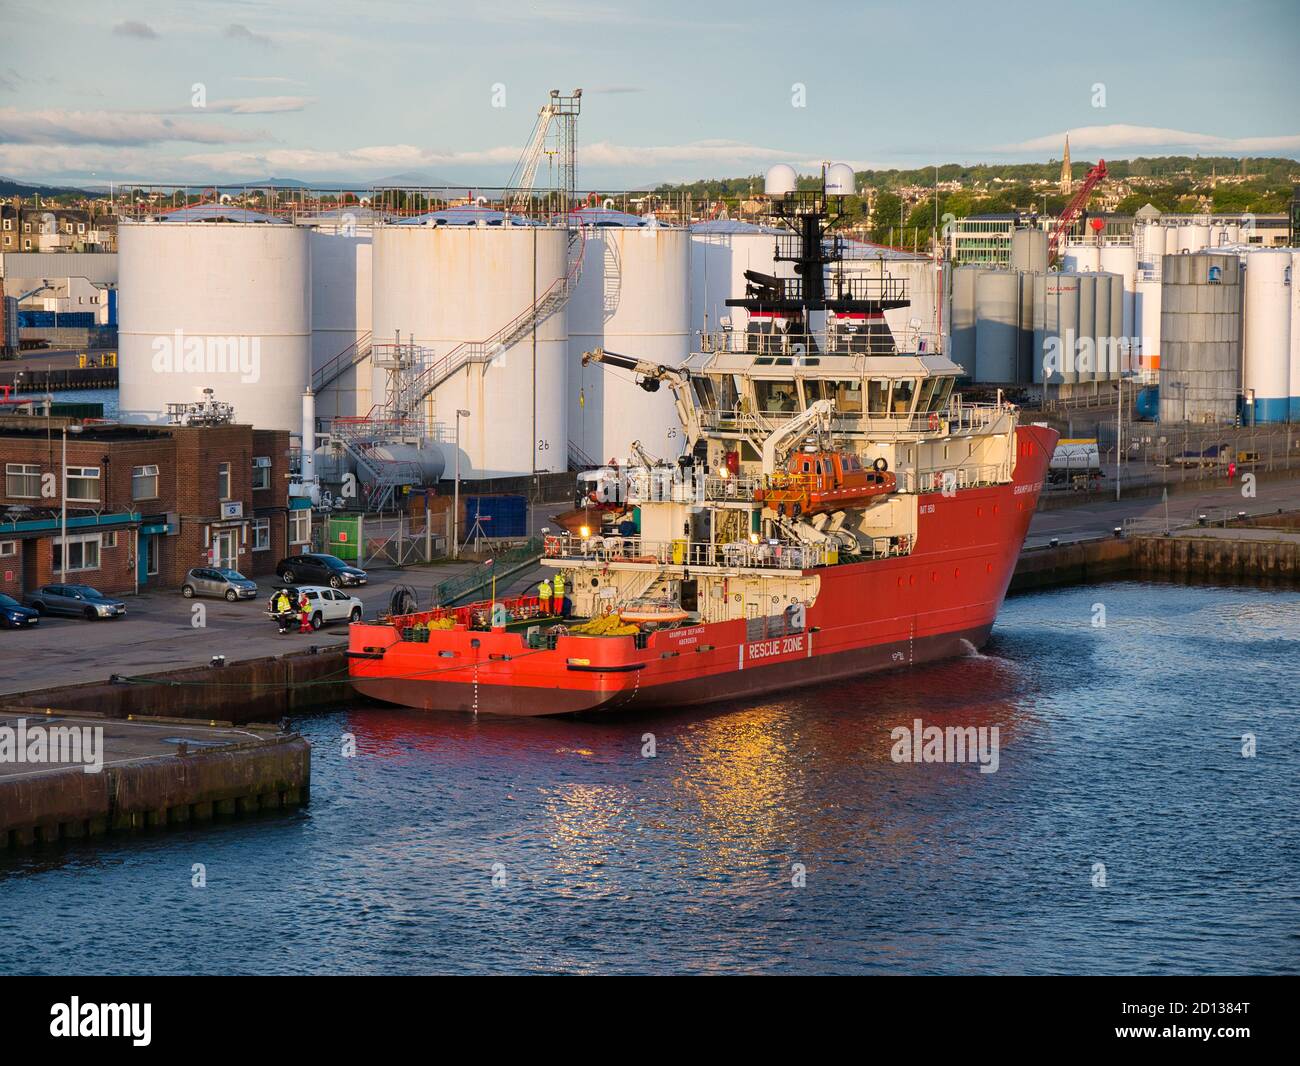 Im Hafen von Aberdeen, Schottland, liegt die Grampian Defiance, ein Standby-Sicherheitsschiff / Emergency Response and Rescue Vessel. Stockfoto